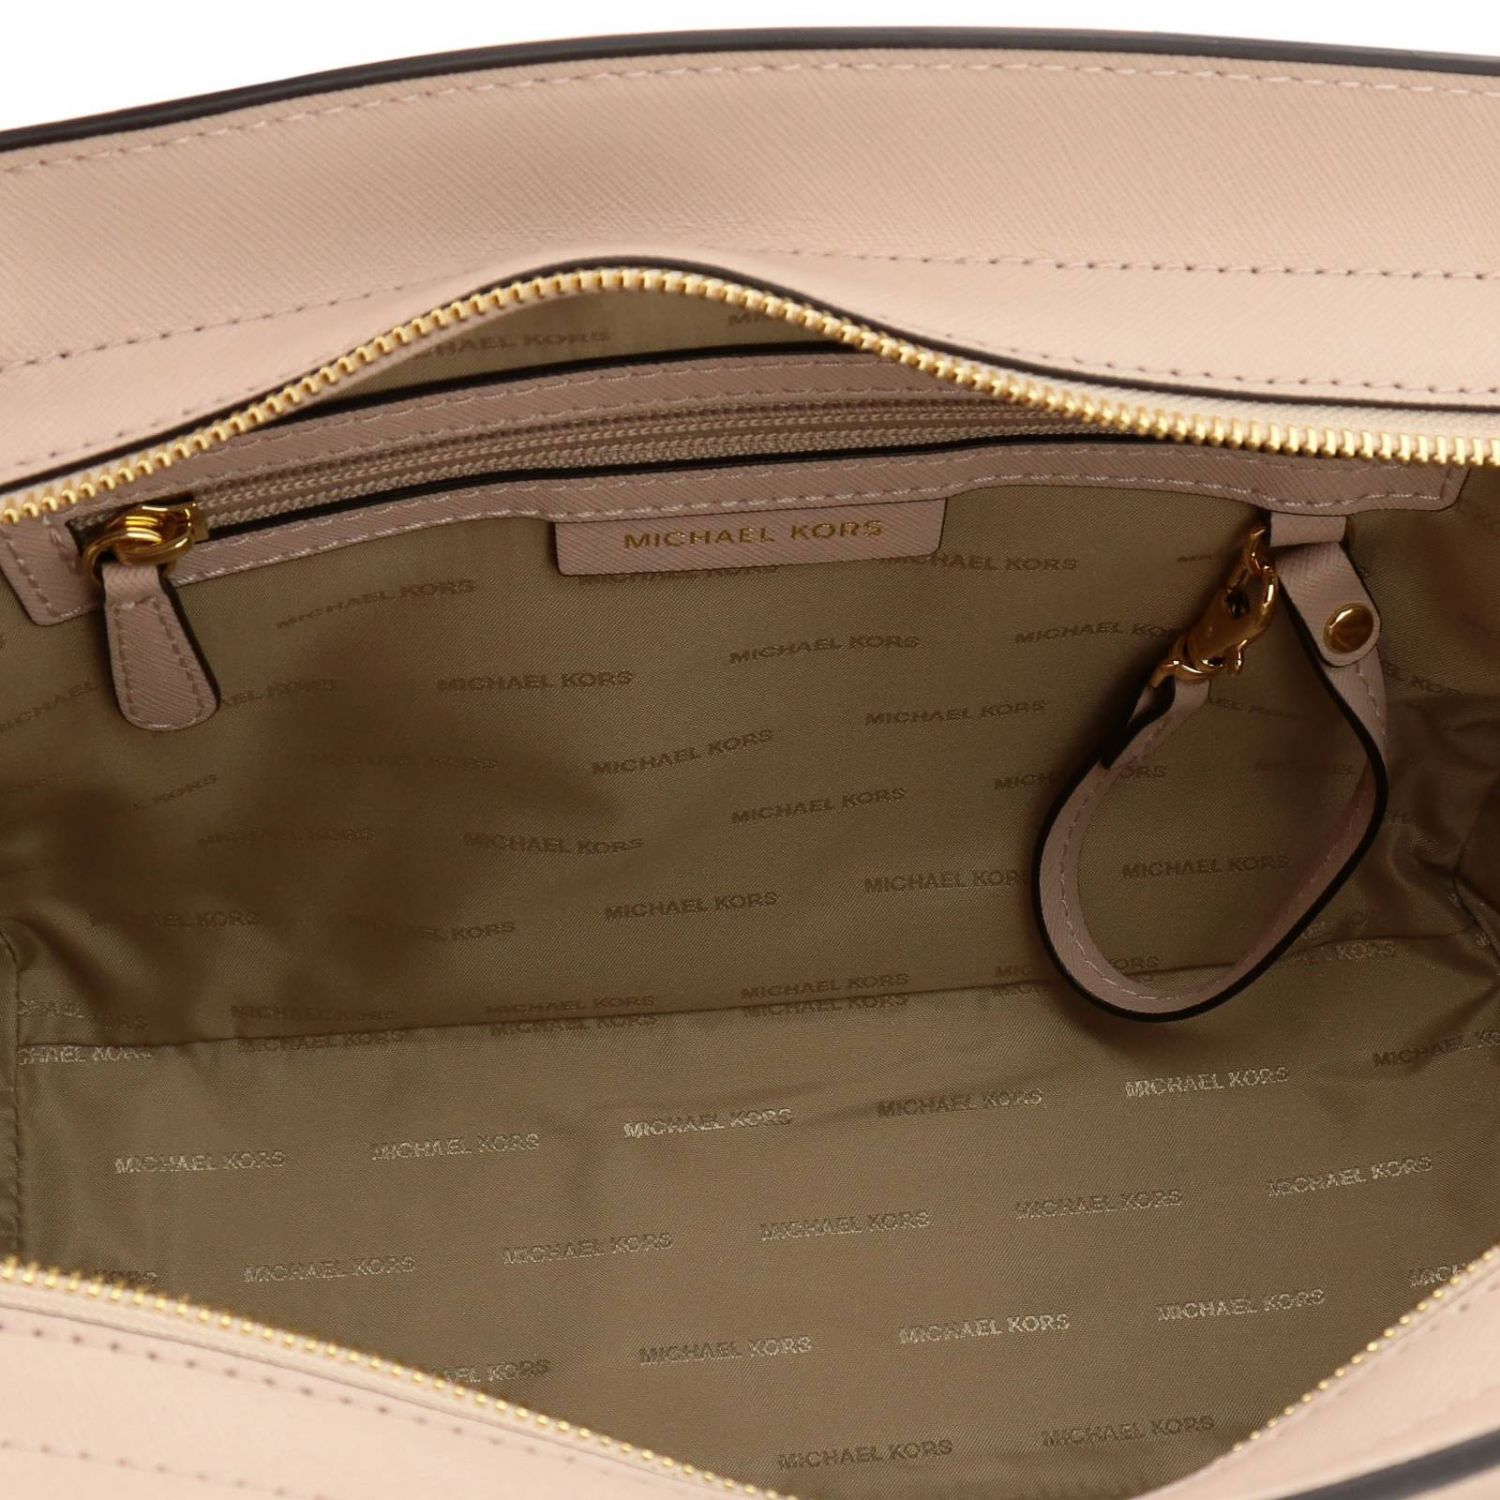 Michael Kors Outlet: Shoulder bag women Michael - Pink | Handbag ...